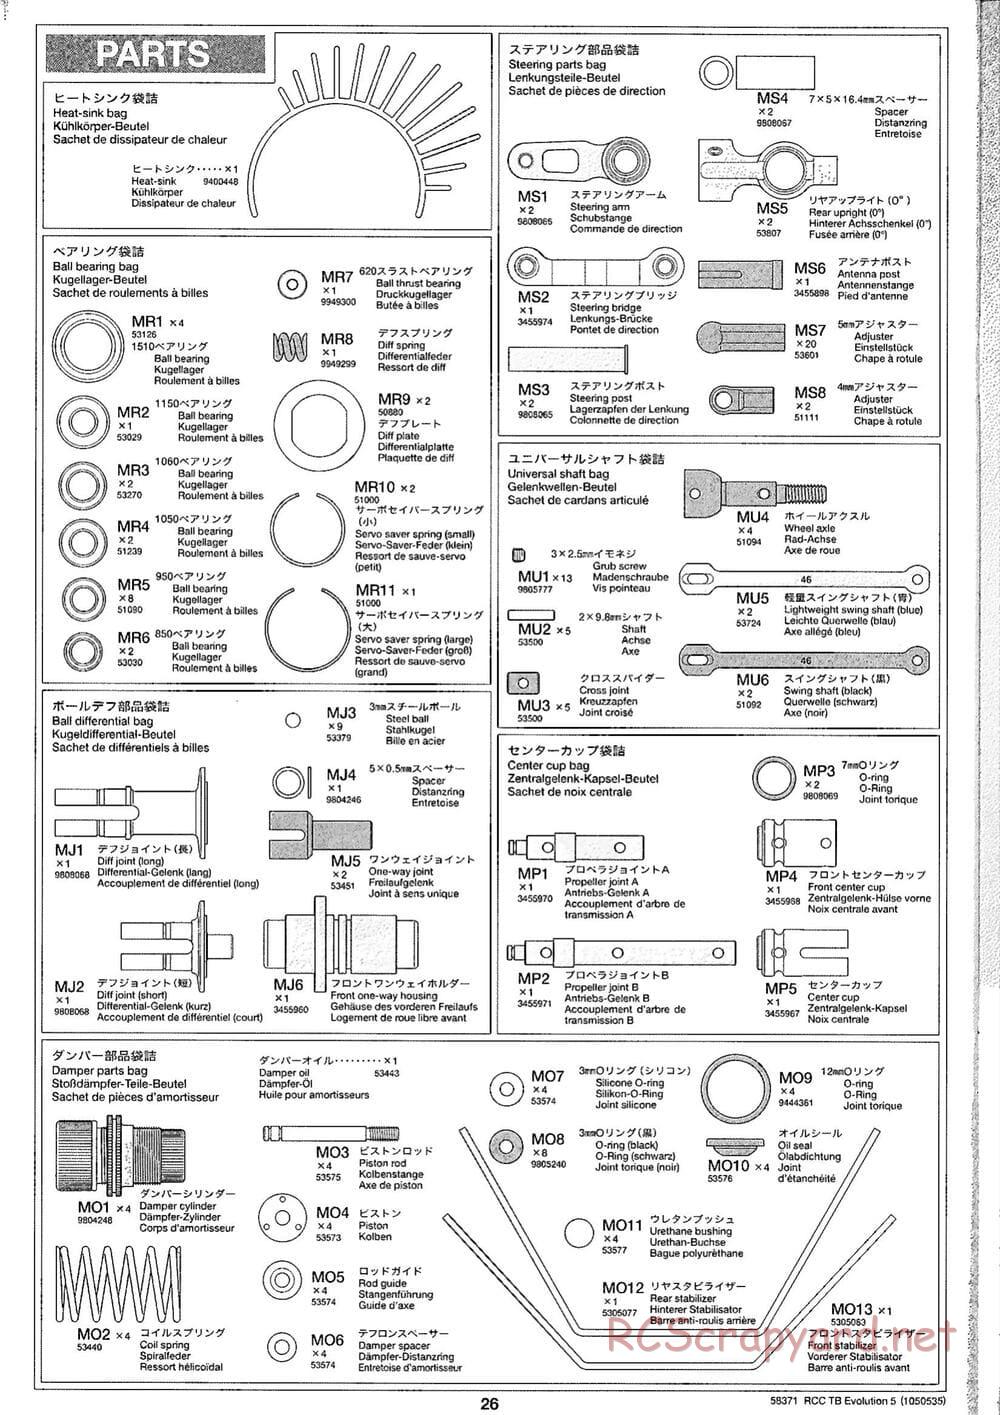 Tamiya - TB Evolution V Chassis - Manual - Page 26